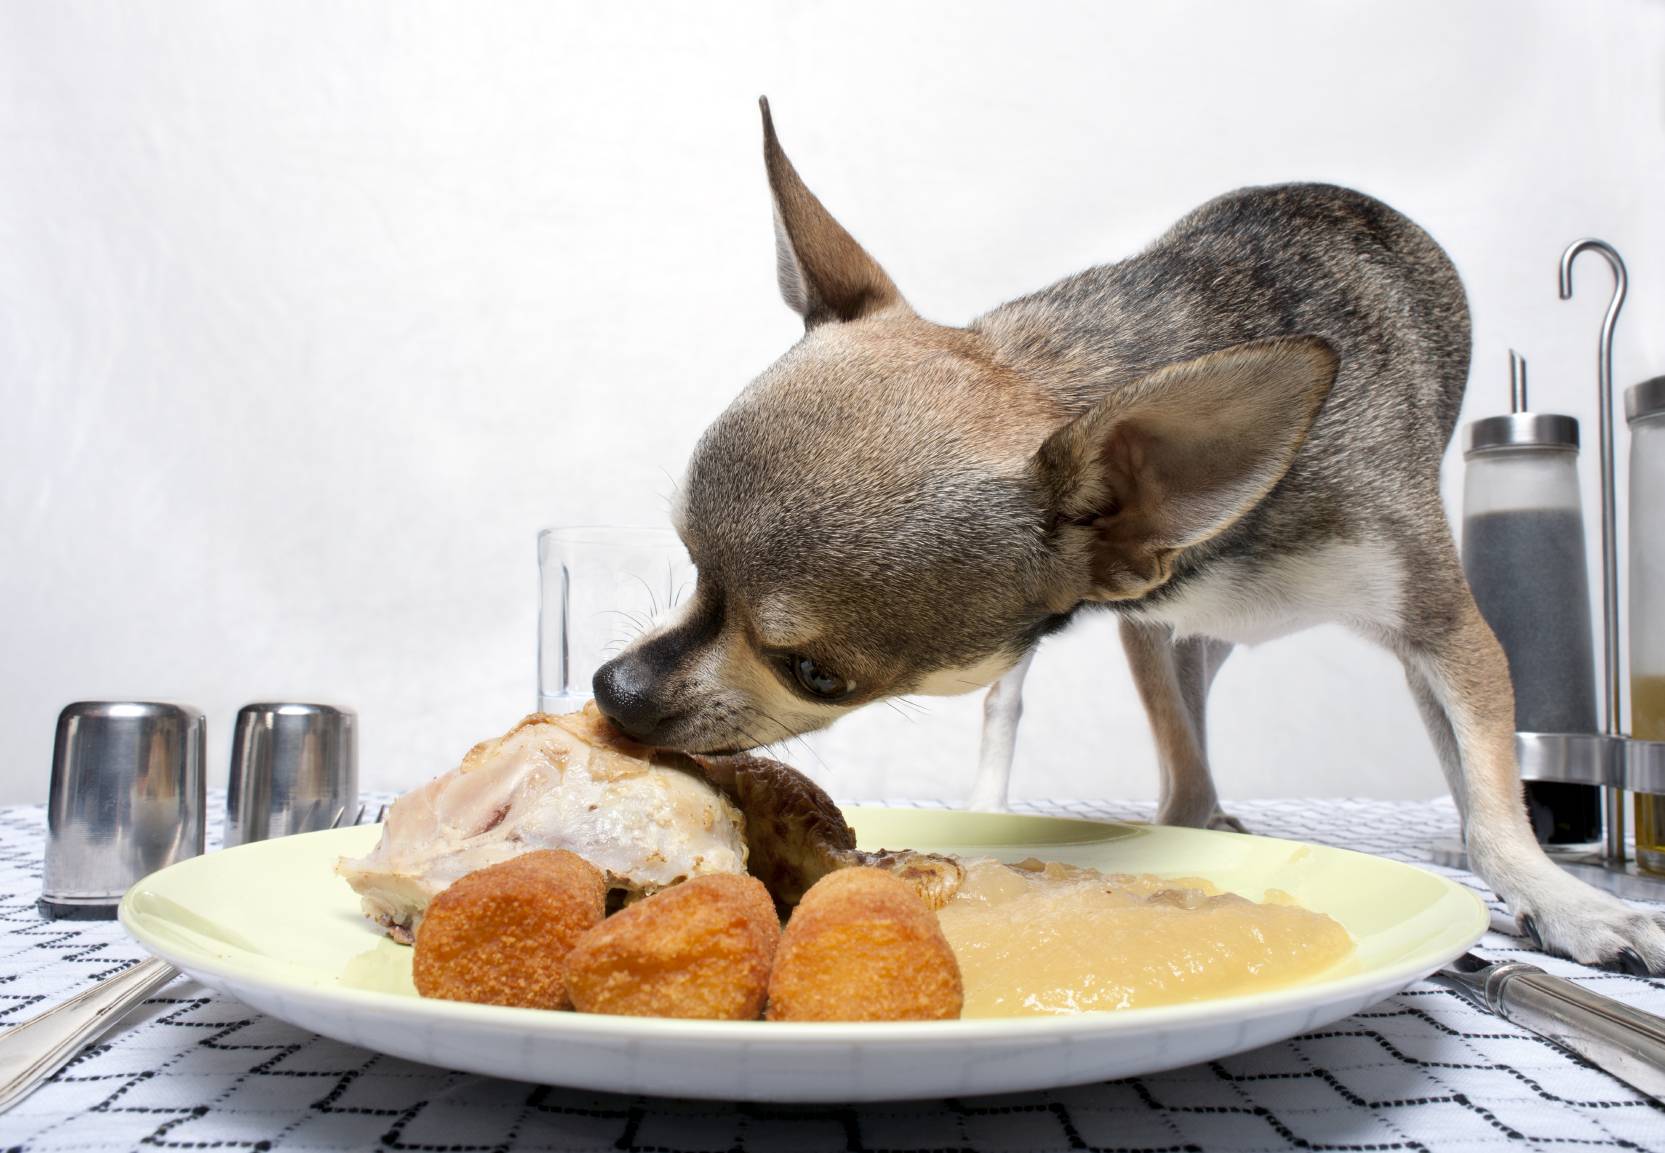 Как правильно кормить собаку?